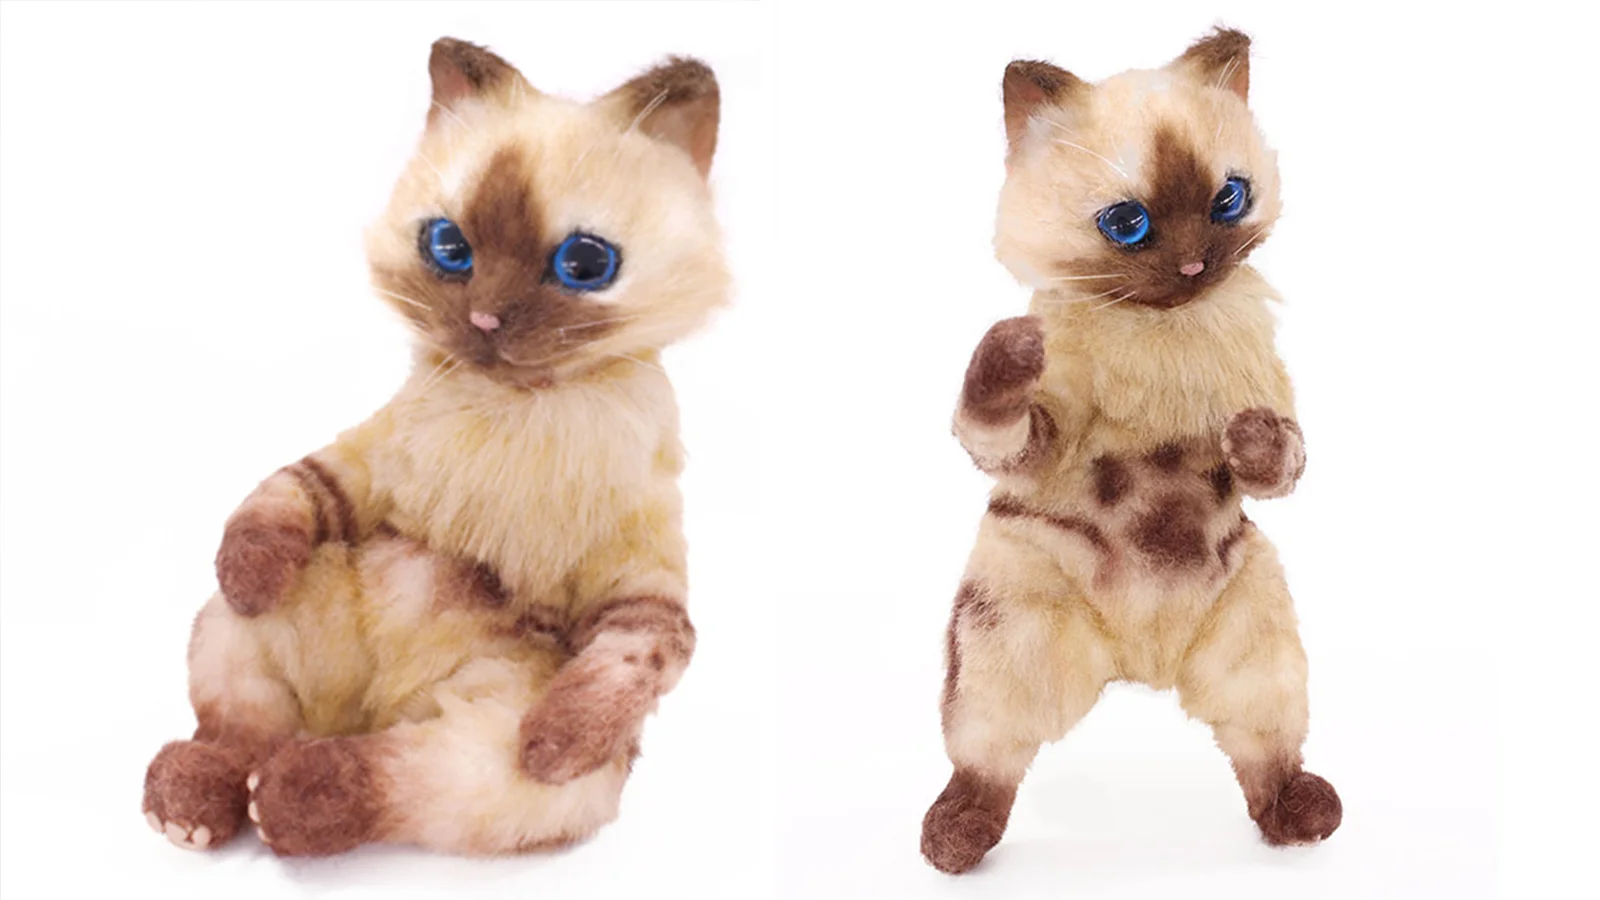 售价15万日元的猫，你还吸得起吗？《怪物猎人》艾露猫玩偶预售